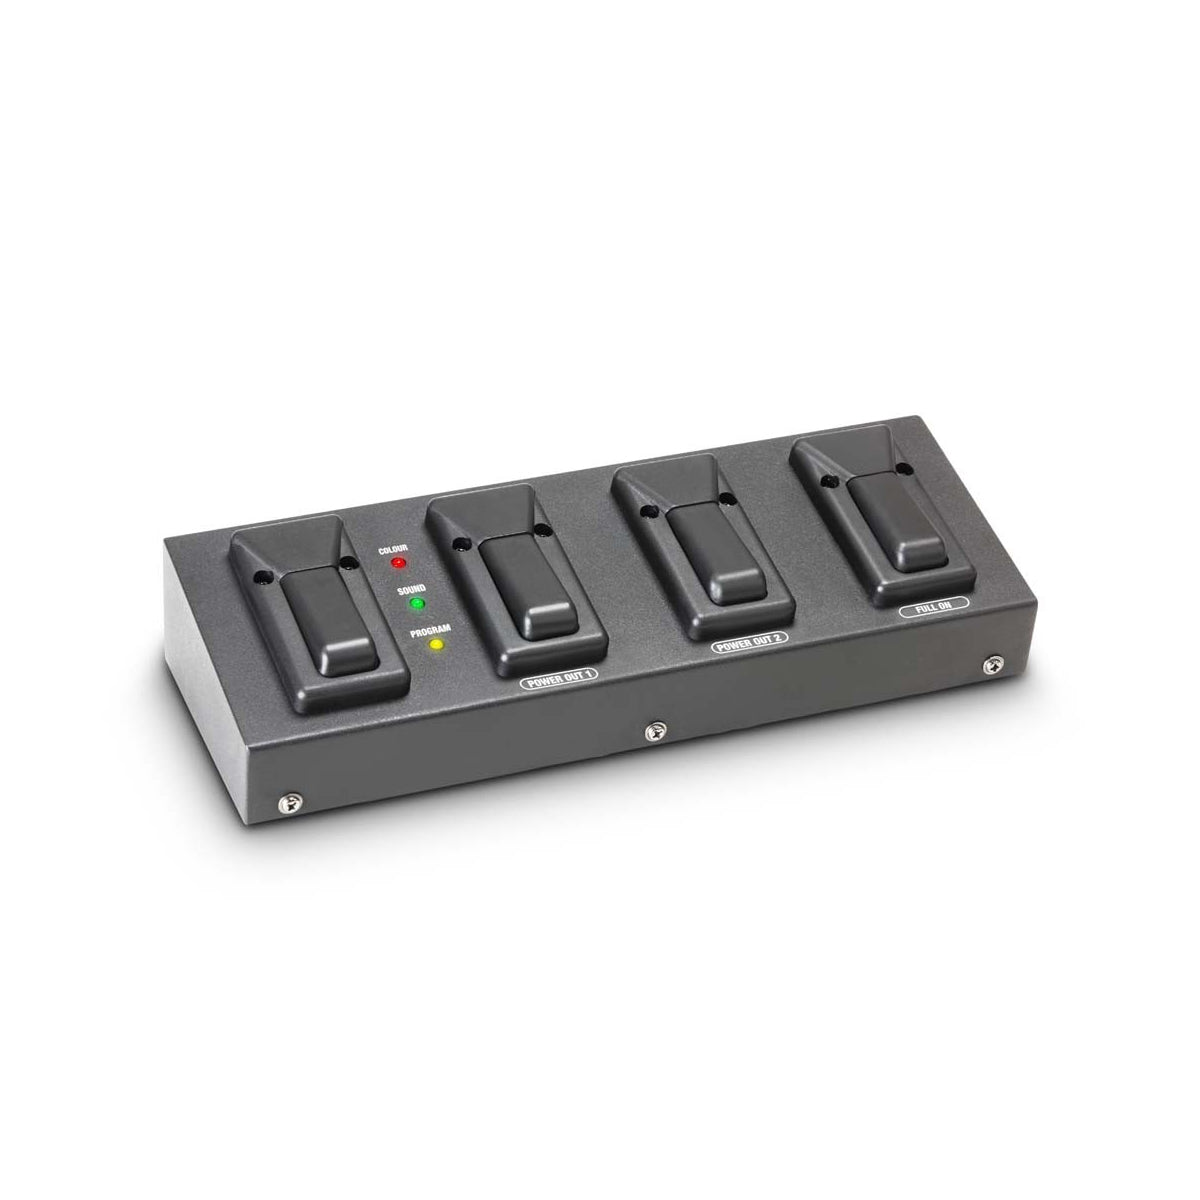 Cameo Multi PAR Foot Plus - Four switch foot pedal for all CLMPAR light sets